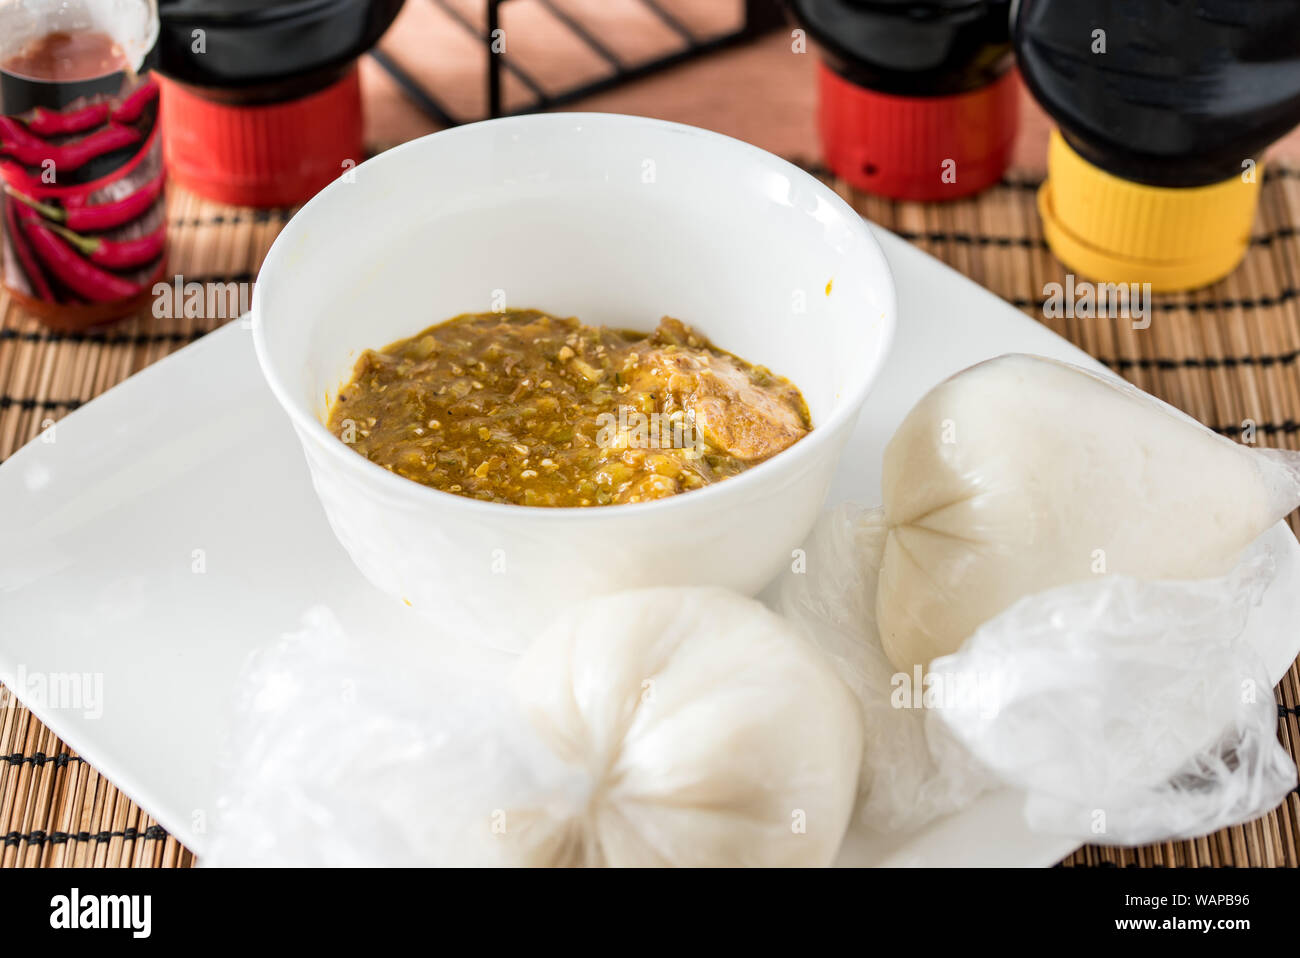 Regionale afrikanische Speisen auf weiße Platte auf hölzernen Hintergrund Stockfoto